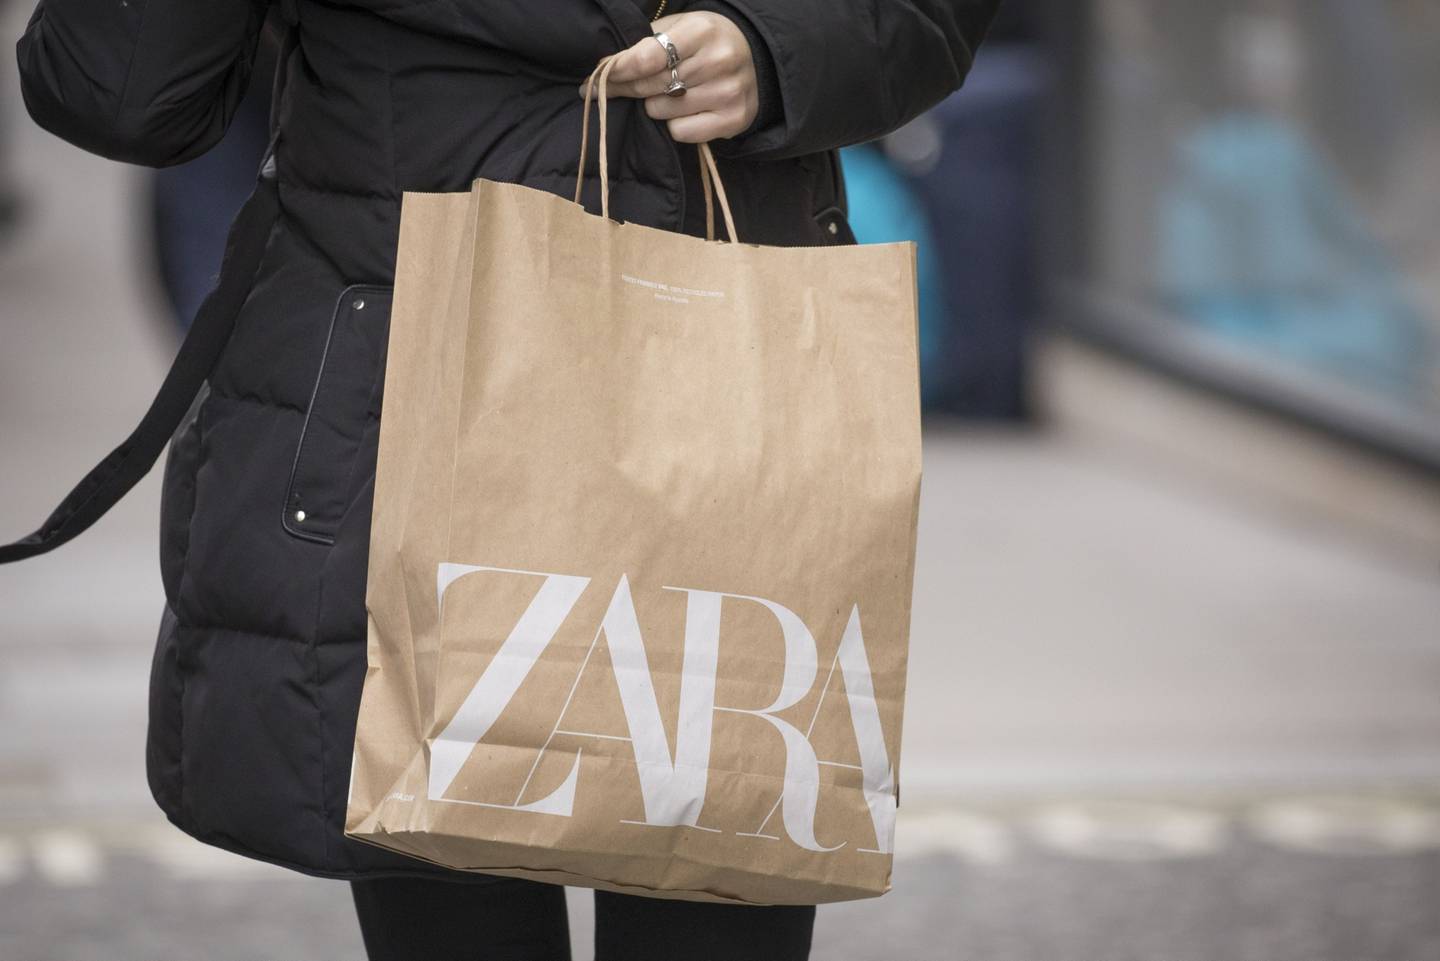 Zara empezará a reparar y revender ropa usada en sus tiendas en el Reino  Unido